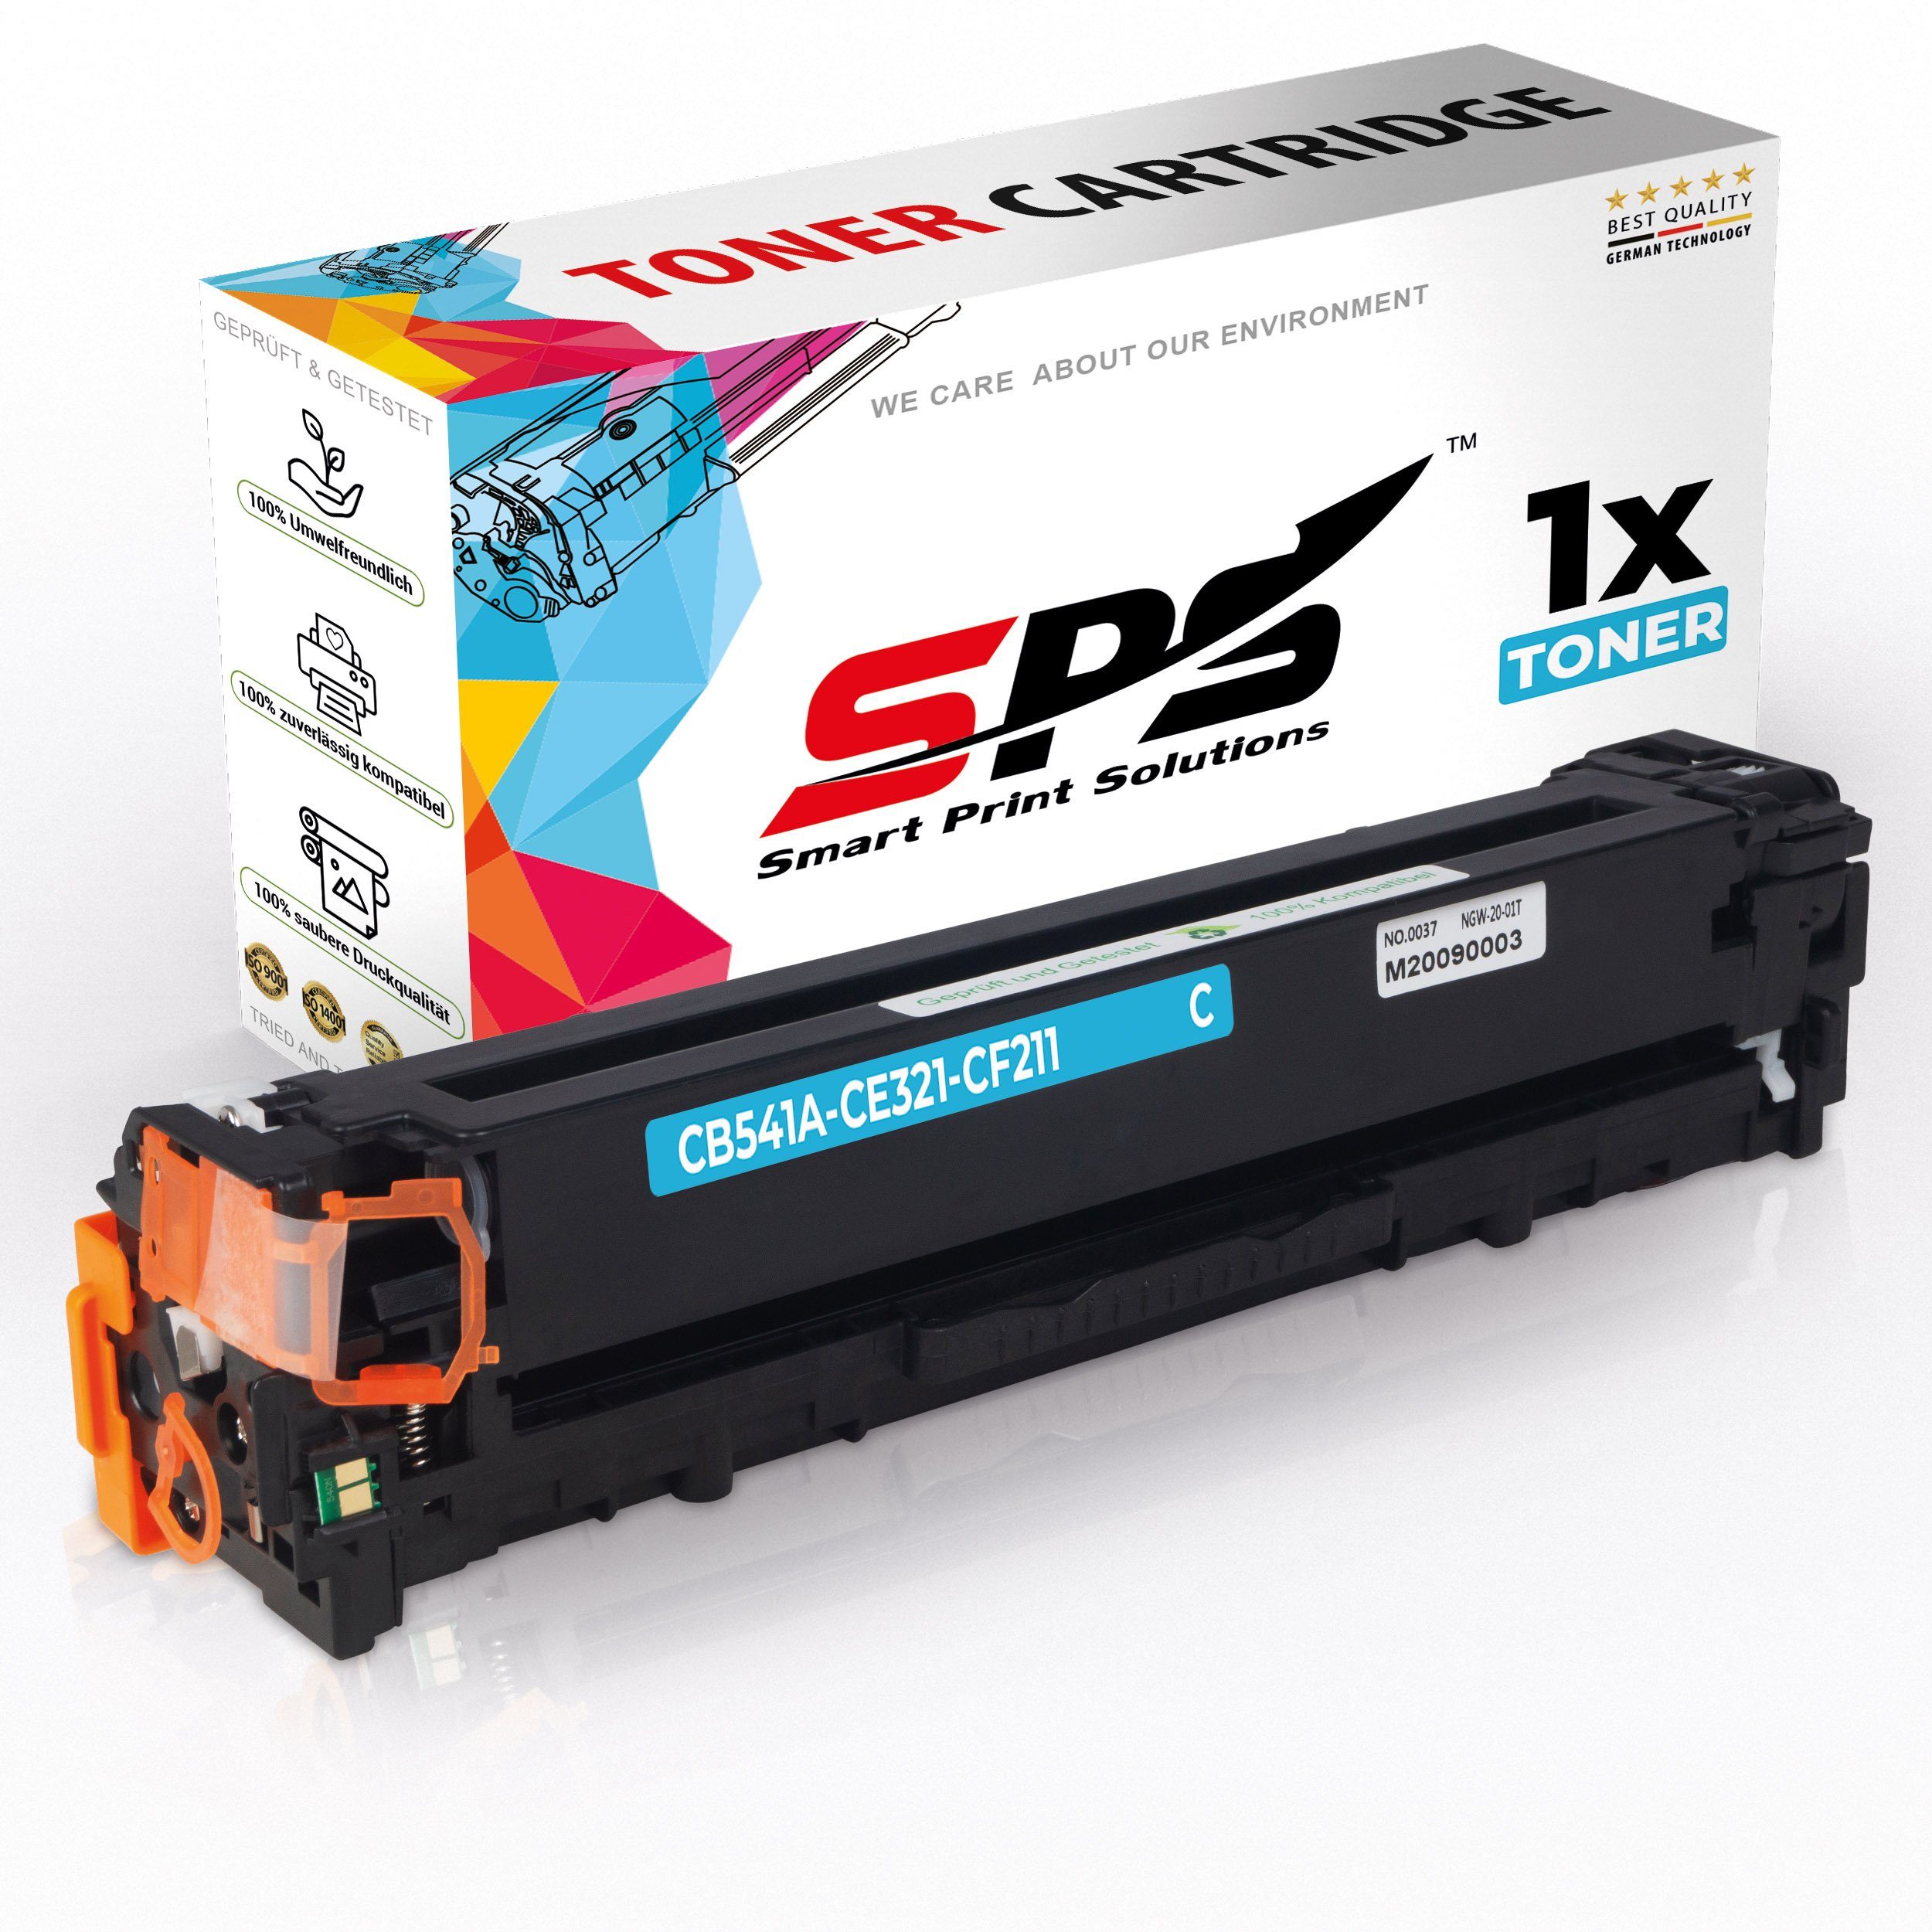 SPS Tonerkartusche Kompatibel für HP Color LaserJet CP 1515 N (CB541A, (1er Pack, 1x Toner)